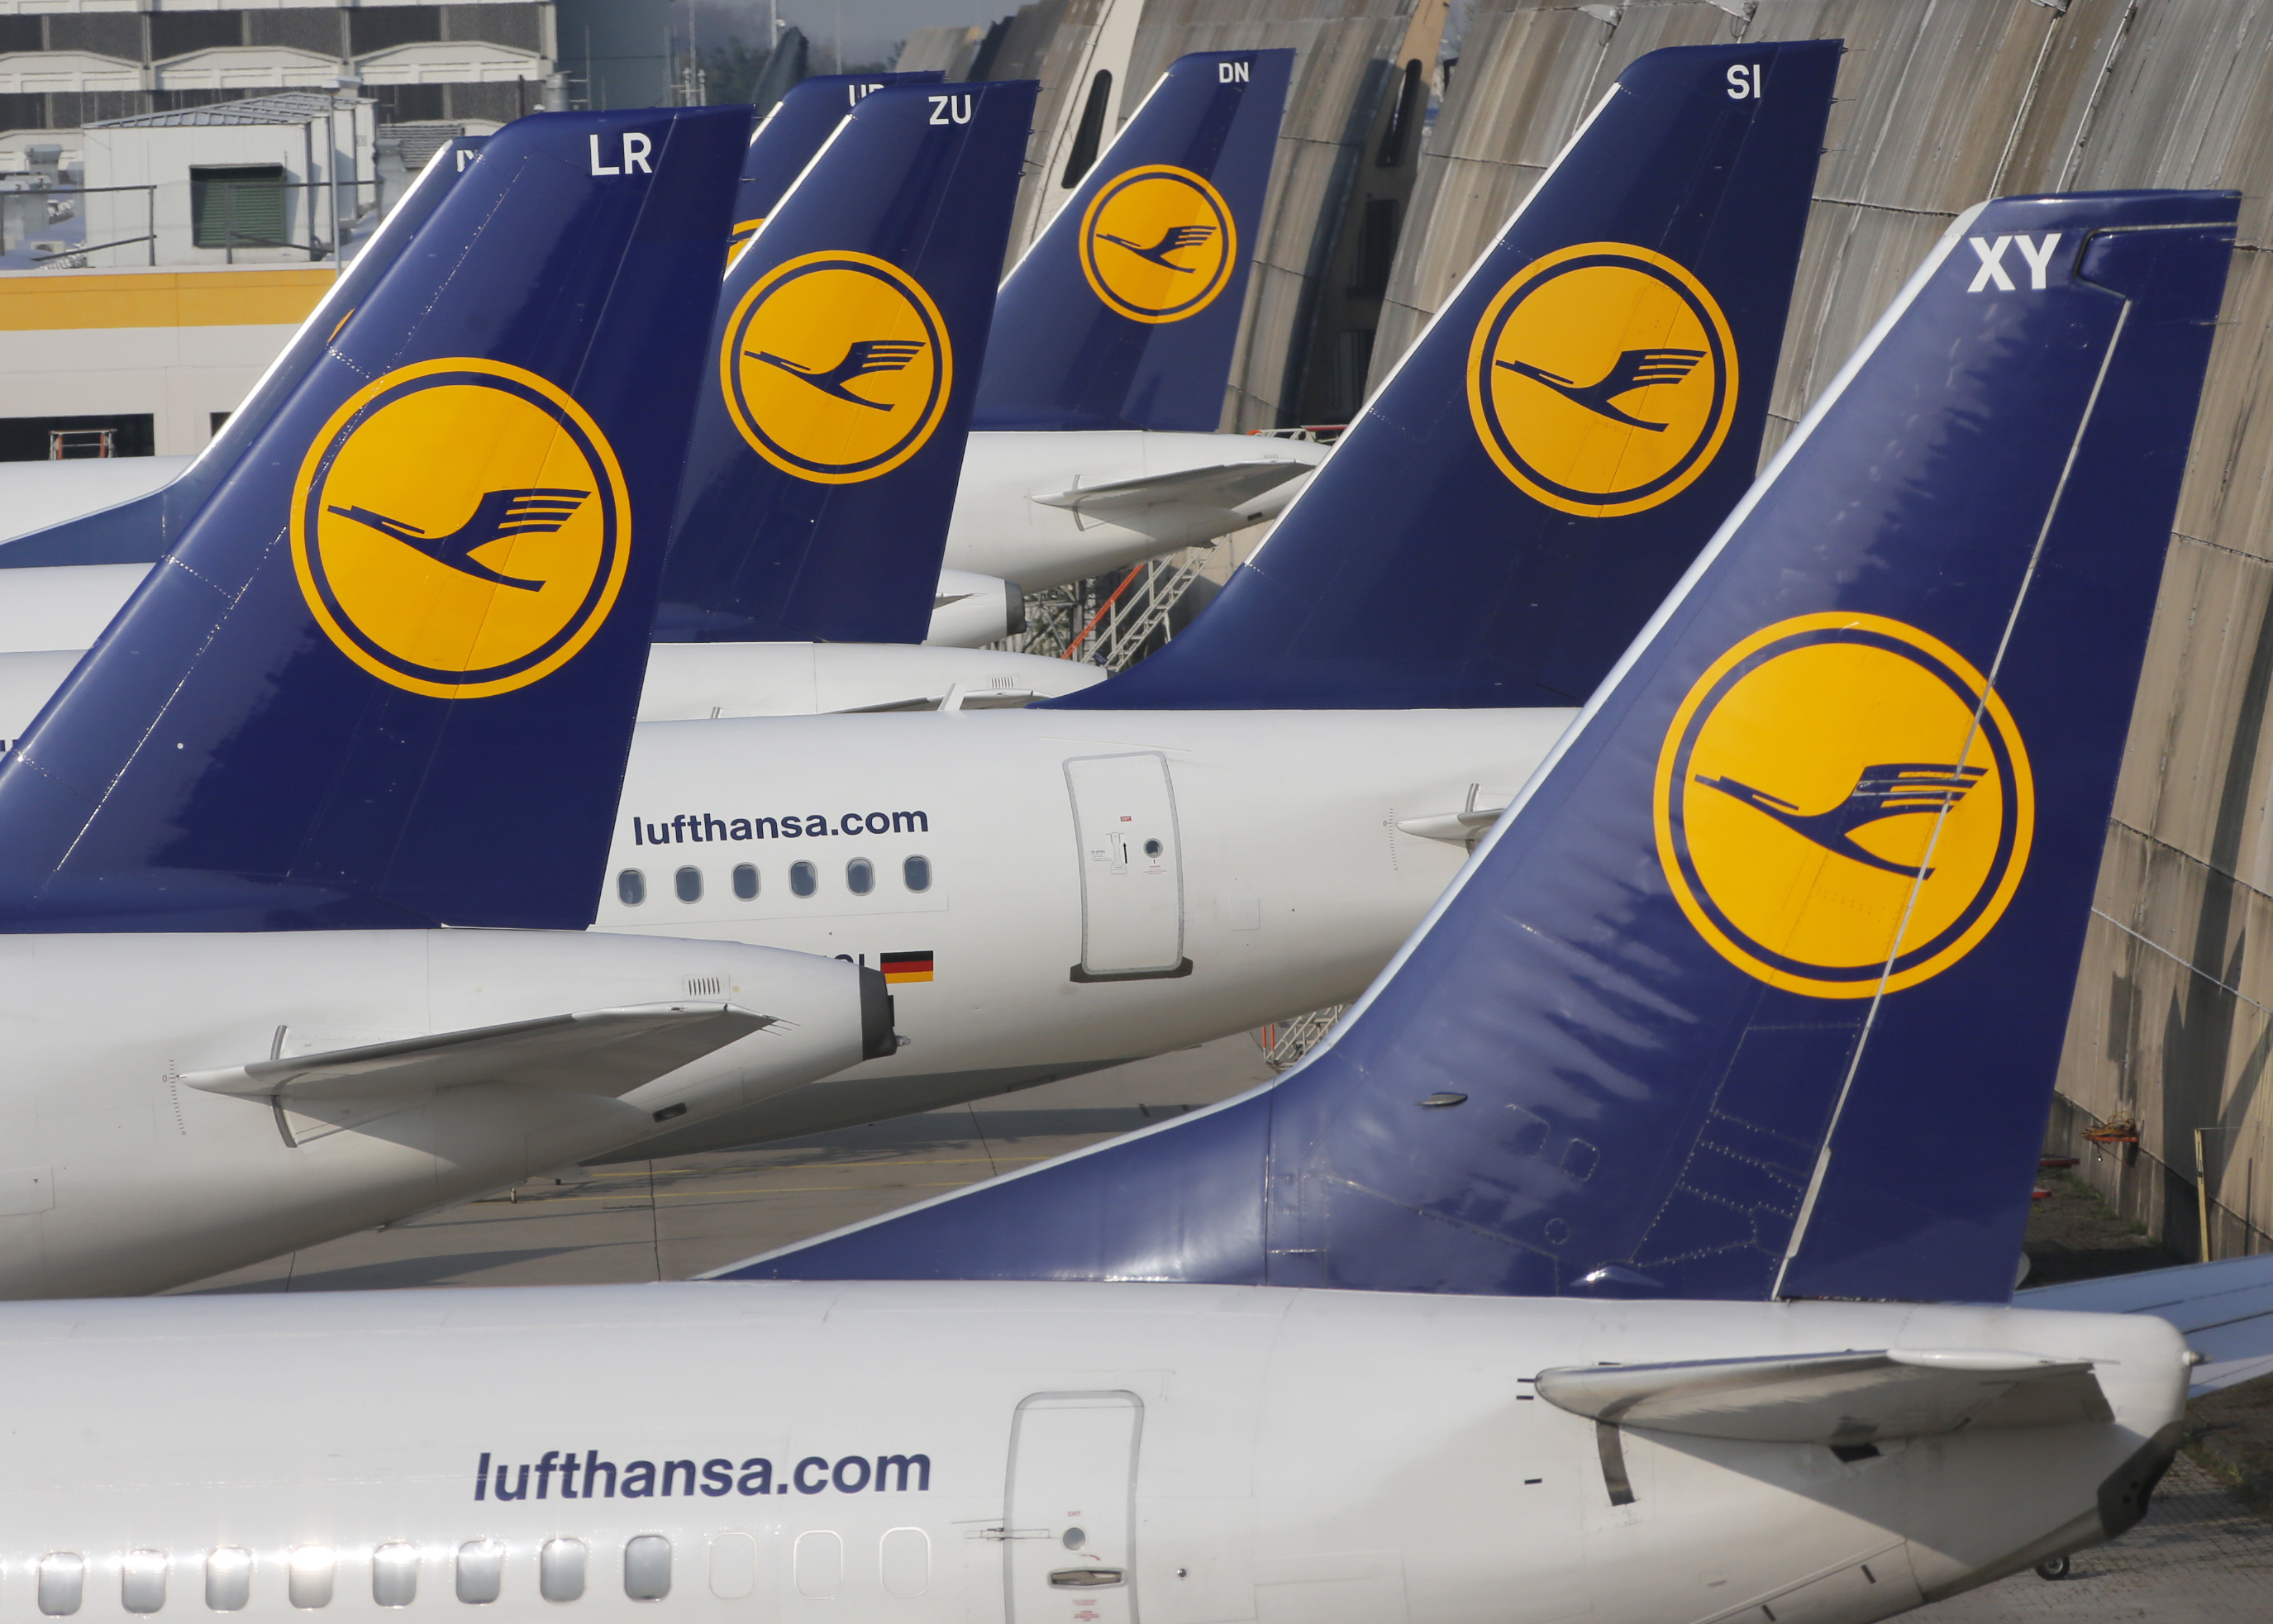 Синдикатът на кабинния персонал в Луфтханза (Lufthansa) днес призова за 48-часова стачка в четвъртък и петък, 7 и 8 ноември